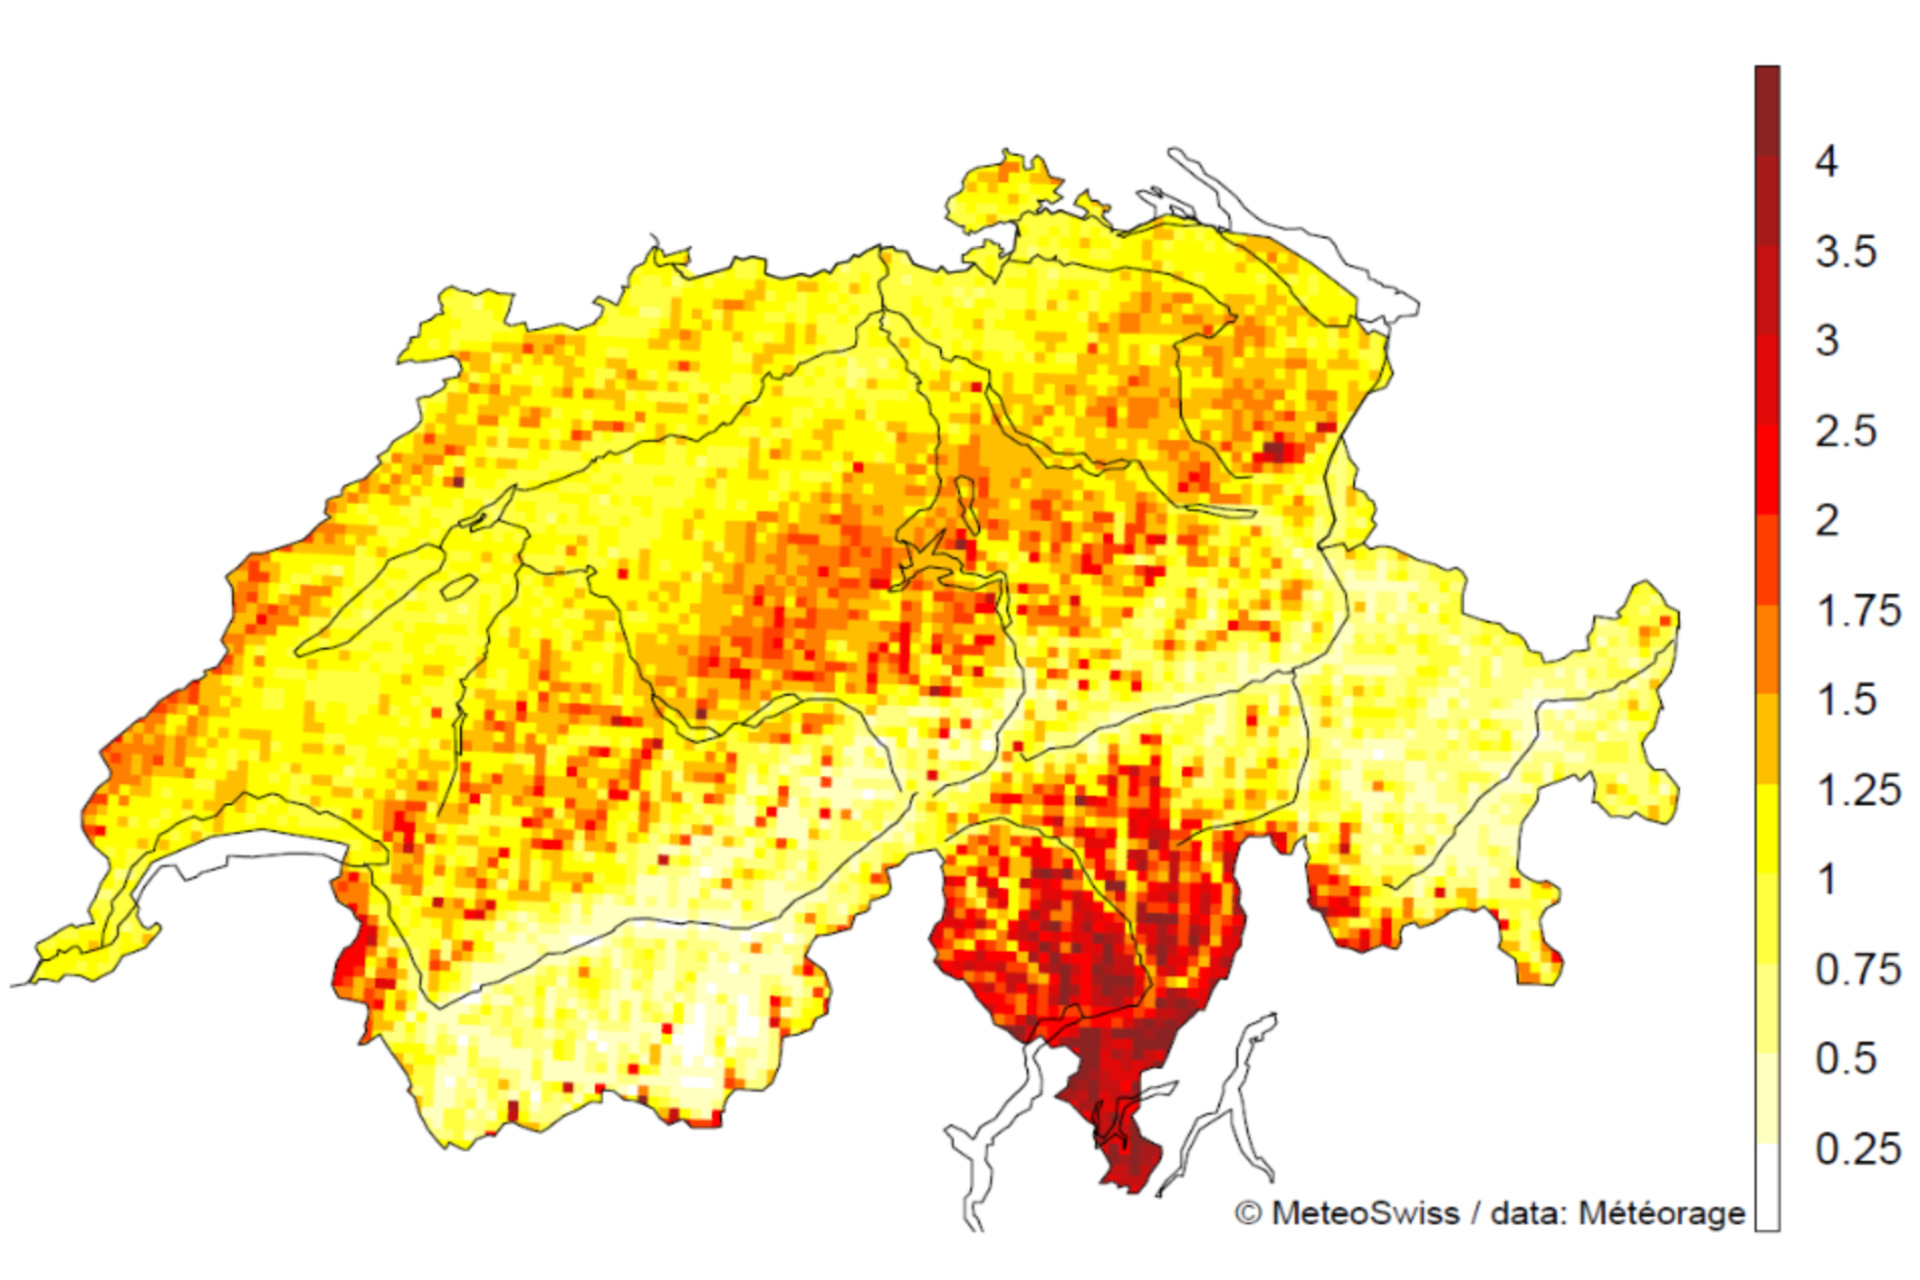 Կայծակ. 2000-2020 թվականներին Շվեյցարիայում մեկ քառակուսի կիլոմետրի վրա կայծակի հարվածների թիվը՝ առանց երկրորդական կայծակի հարվածների